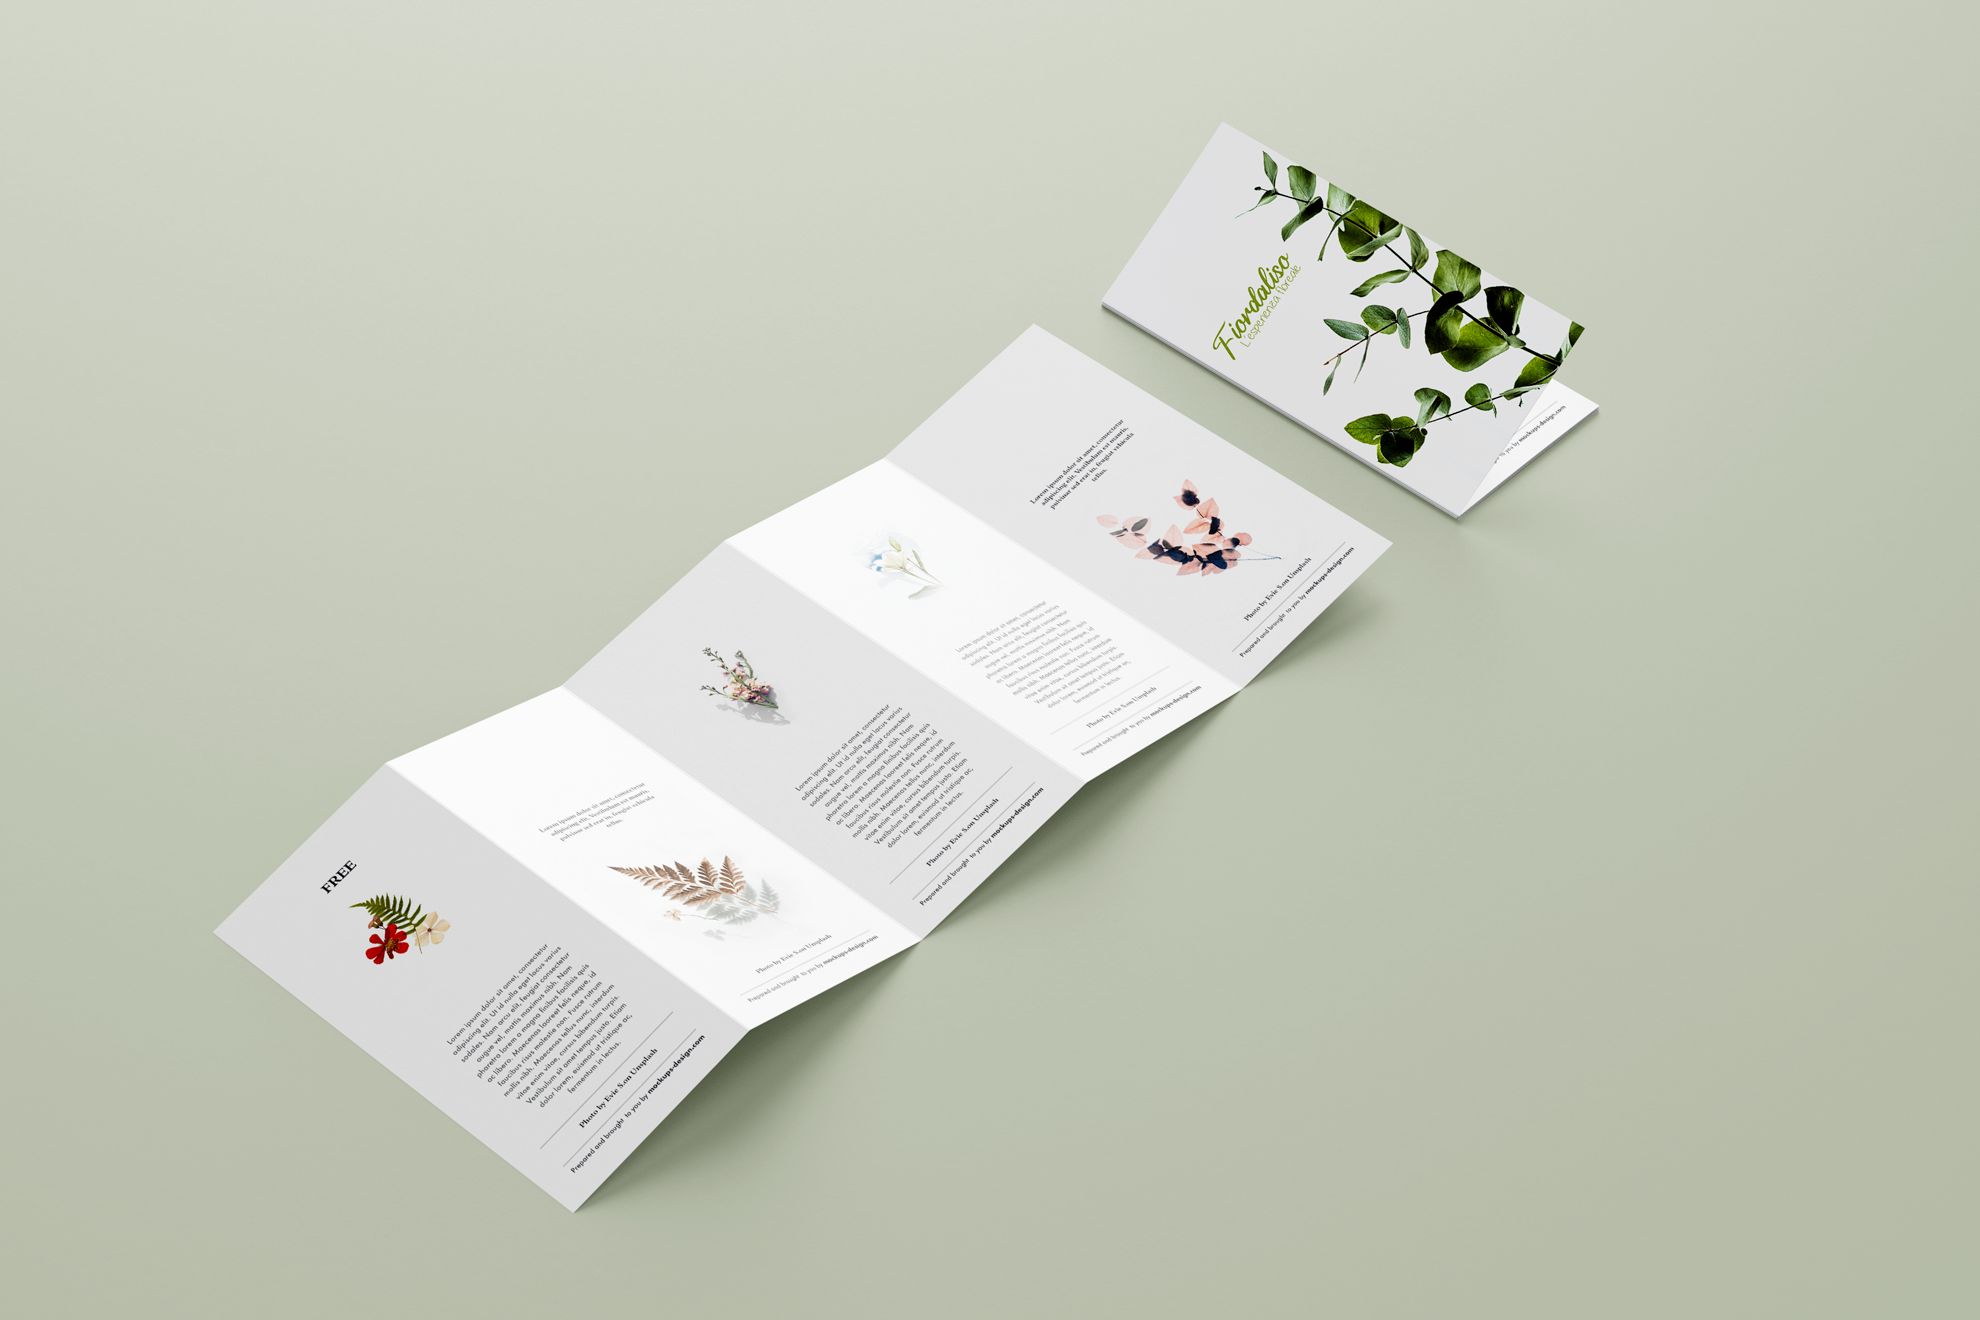 Five-panel penta-fold brochure